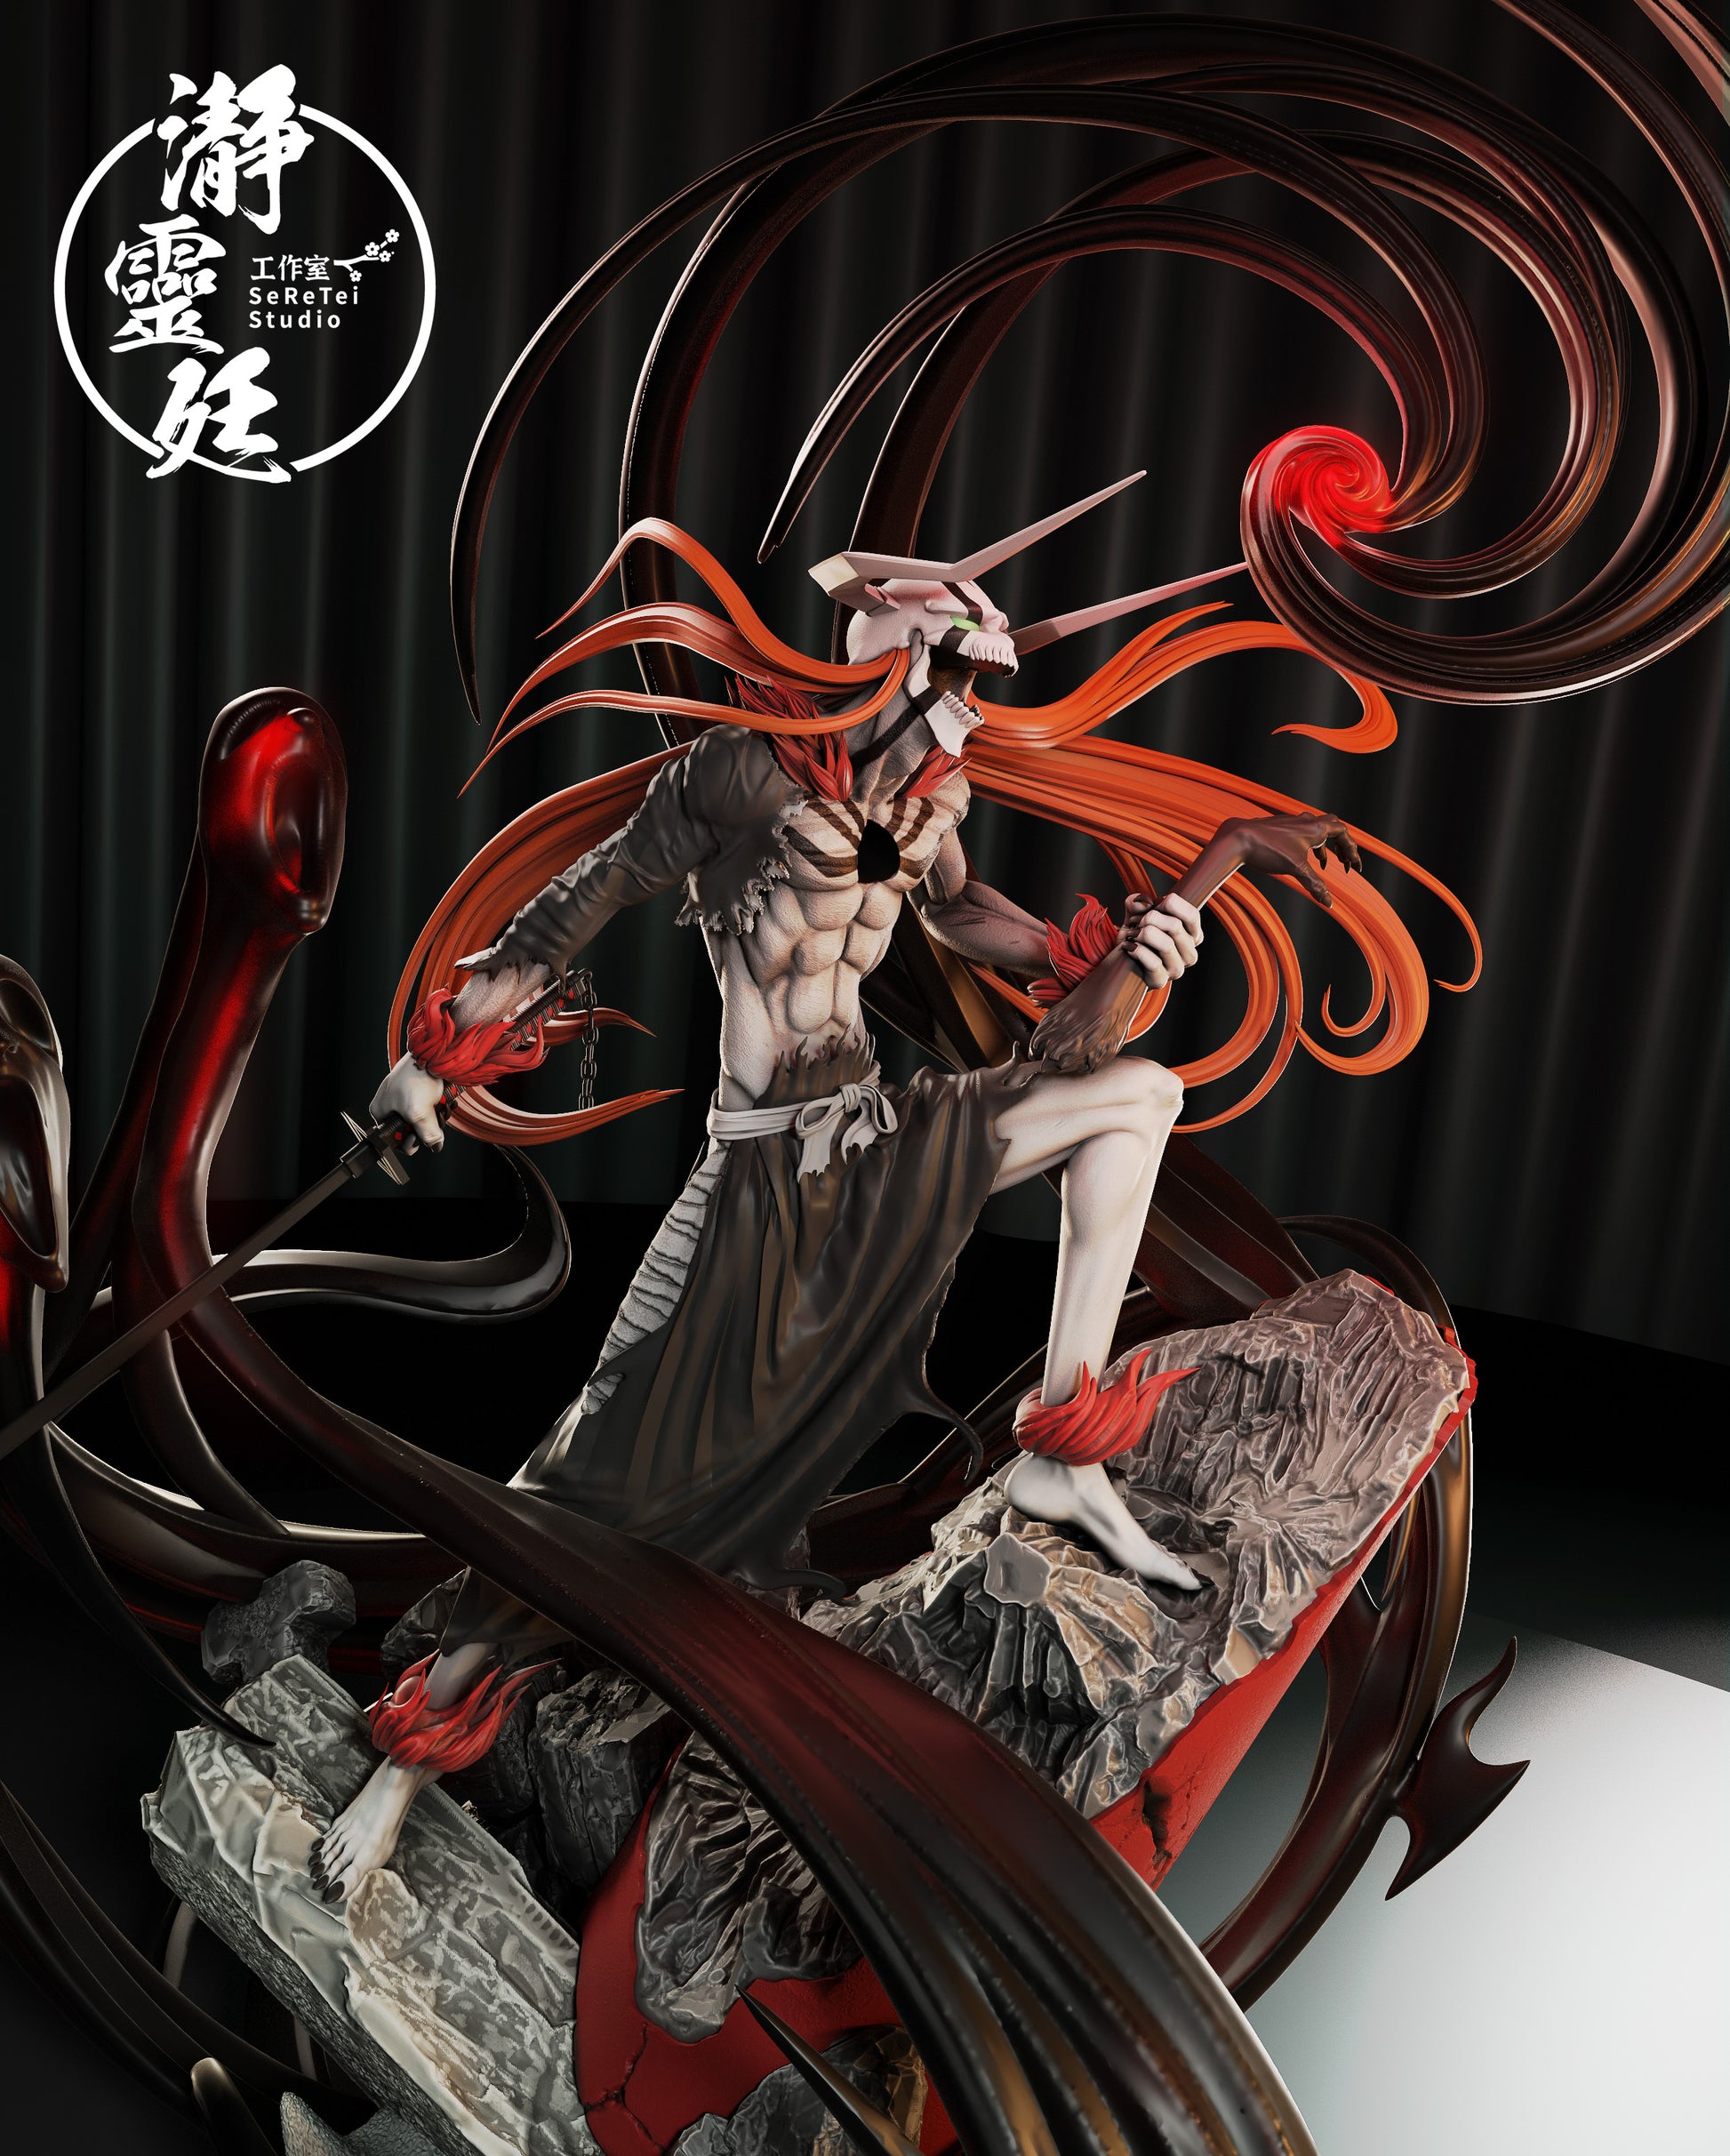 AXE Studio BLEACH Kurosaki Ichigo Statue Figurine Resin Model Original